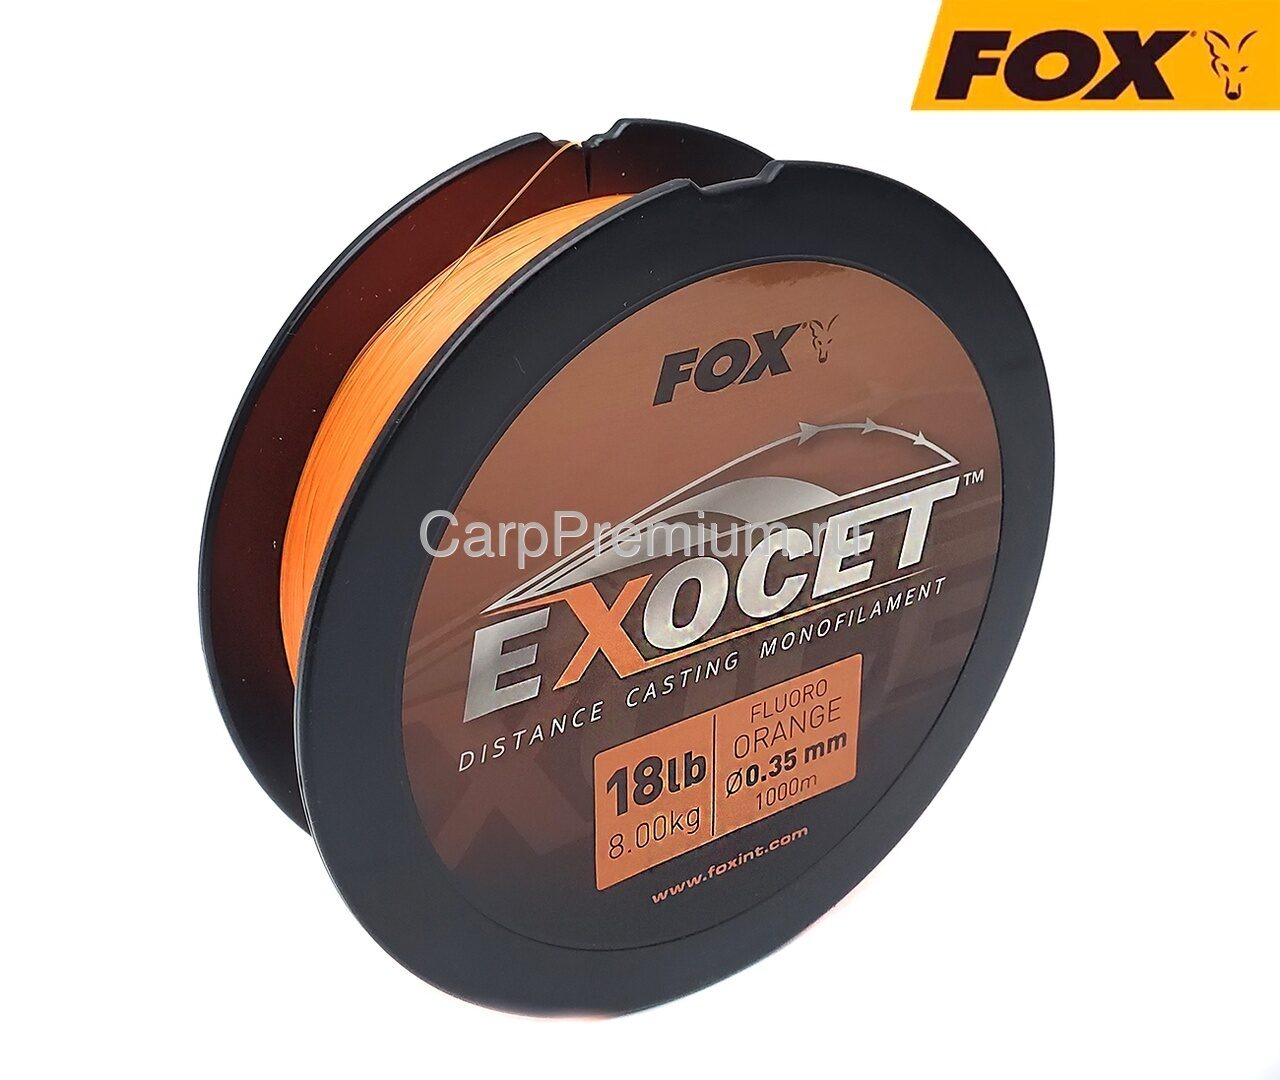 Леска Монофильная карповая 0.35 мм Флюро-Оранжевая Fox (Фокс) - Exocet Fluoro Orange Mono 18lb / 8.0 кг, 1000 м